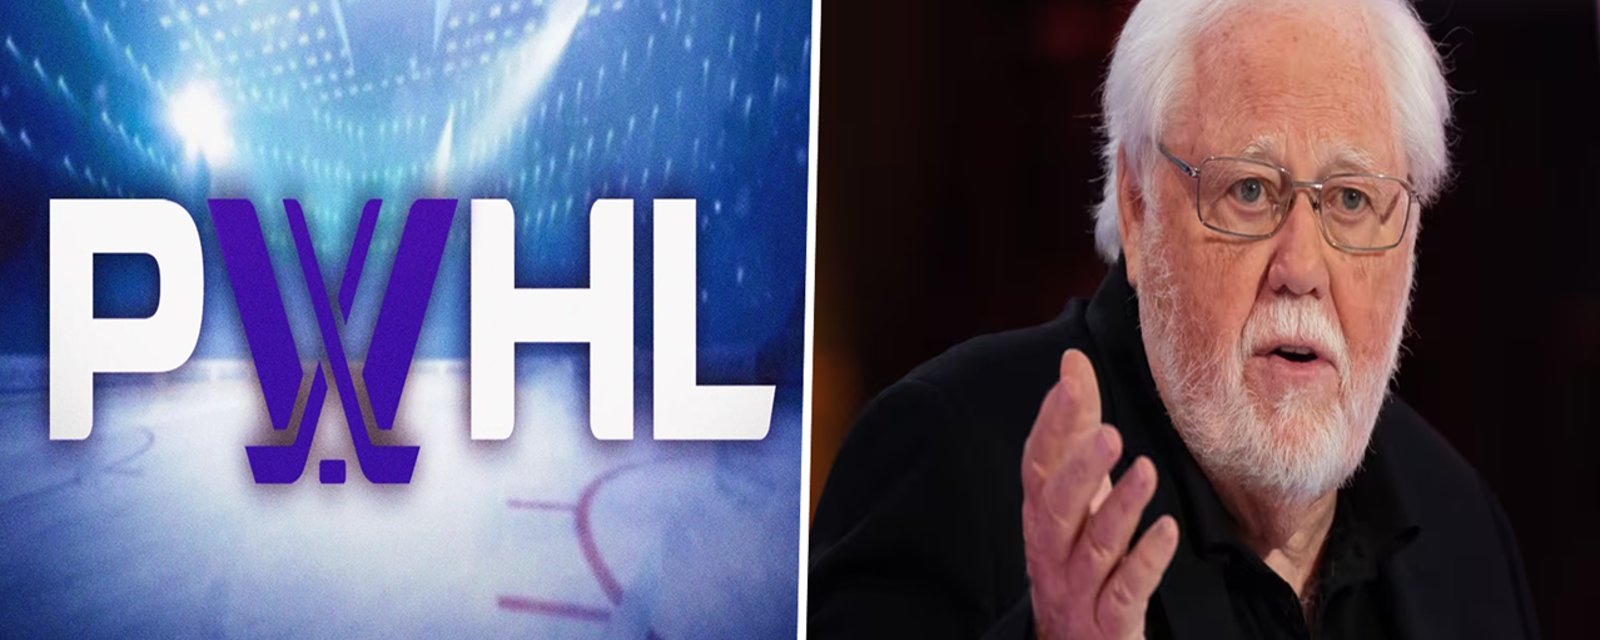 PWHL | Réjean Tremblay croit que Québec devrait obtenir une franchise